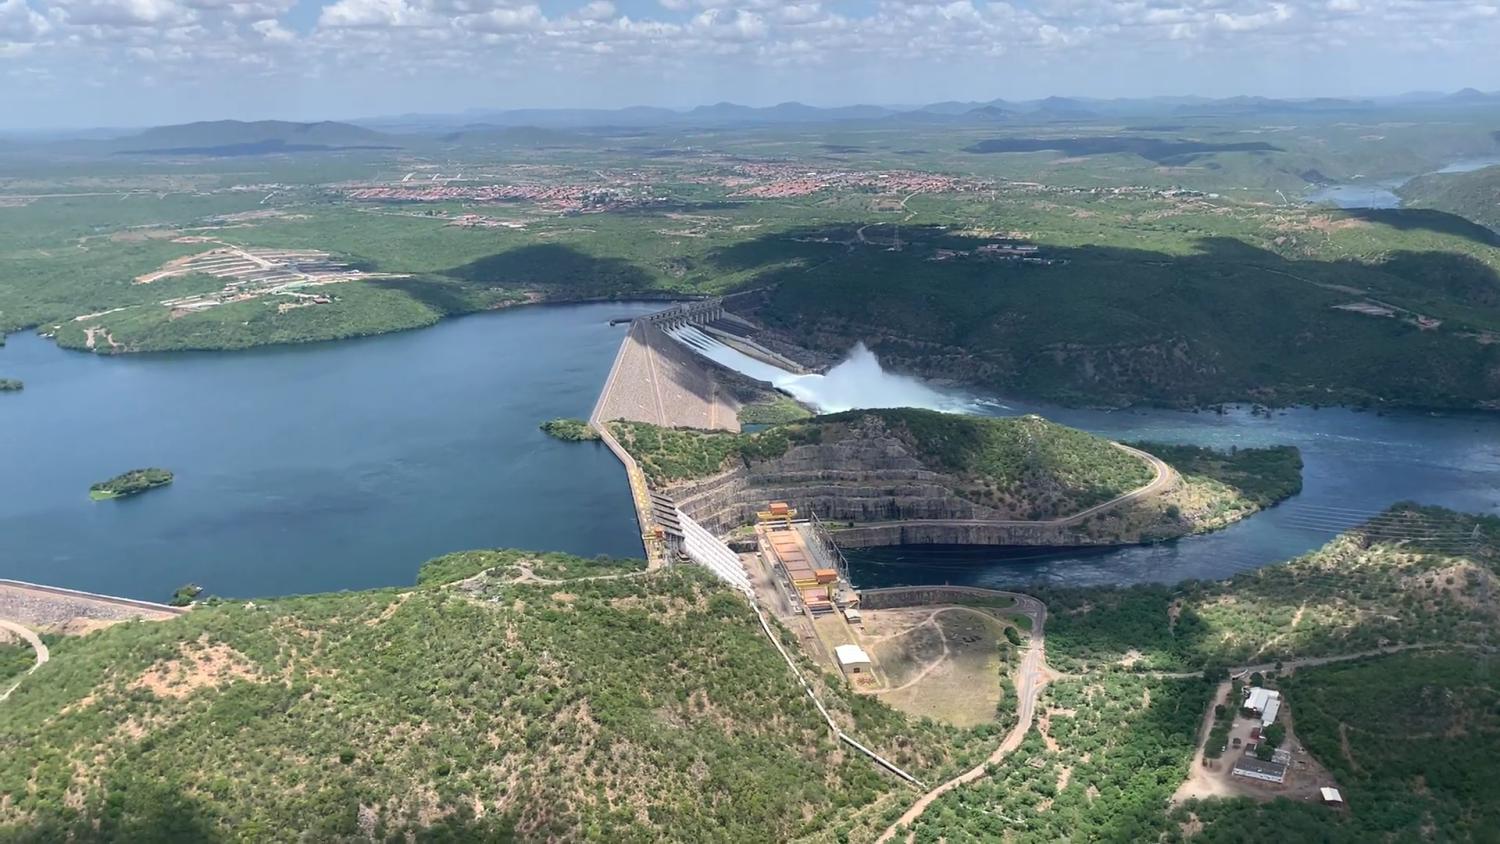 Cânions estão localizados na região da Usina Hidrelétrica de Xingó. Fotos: Josafá Neto/Rádio UFS